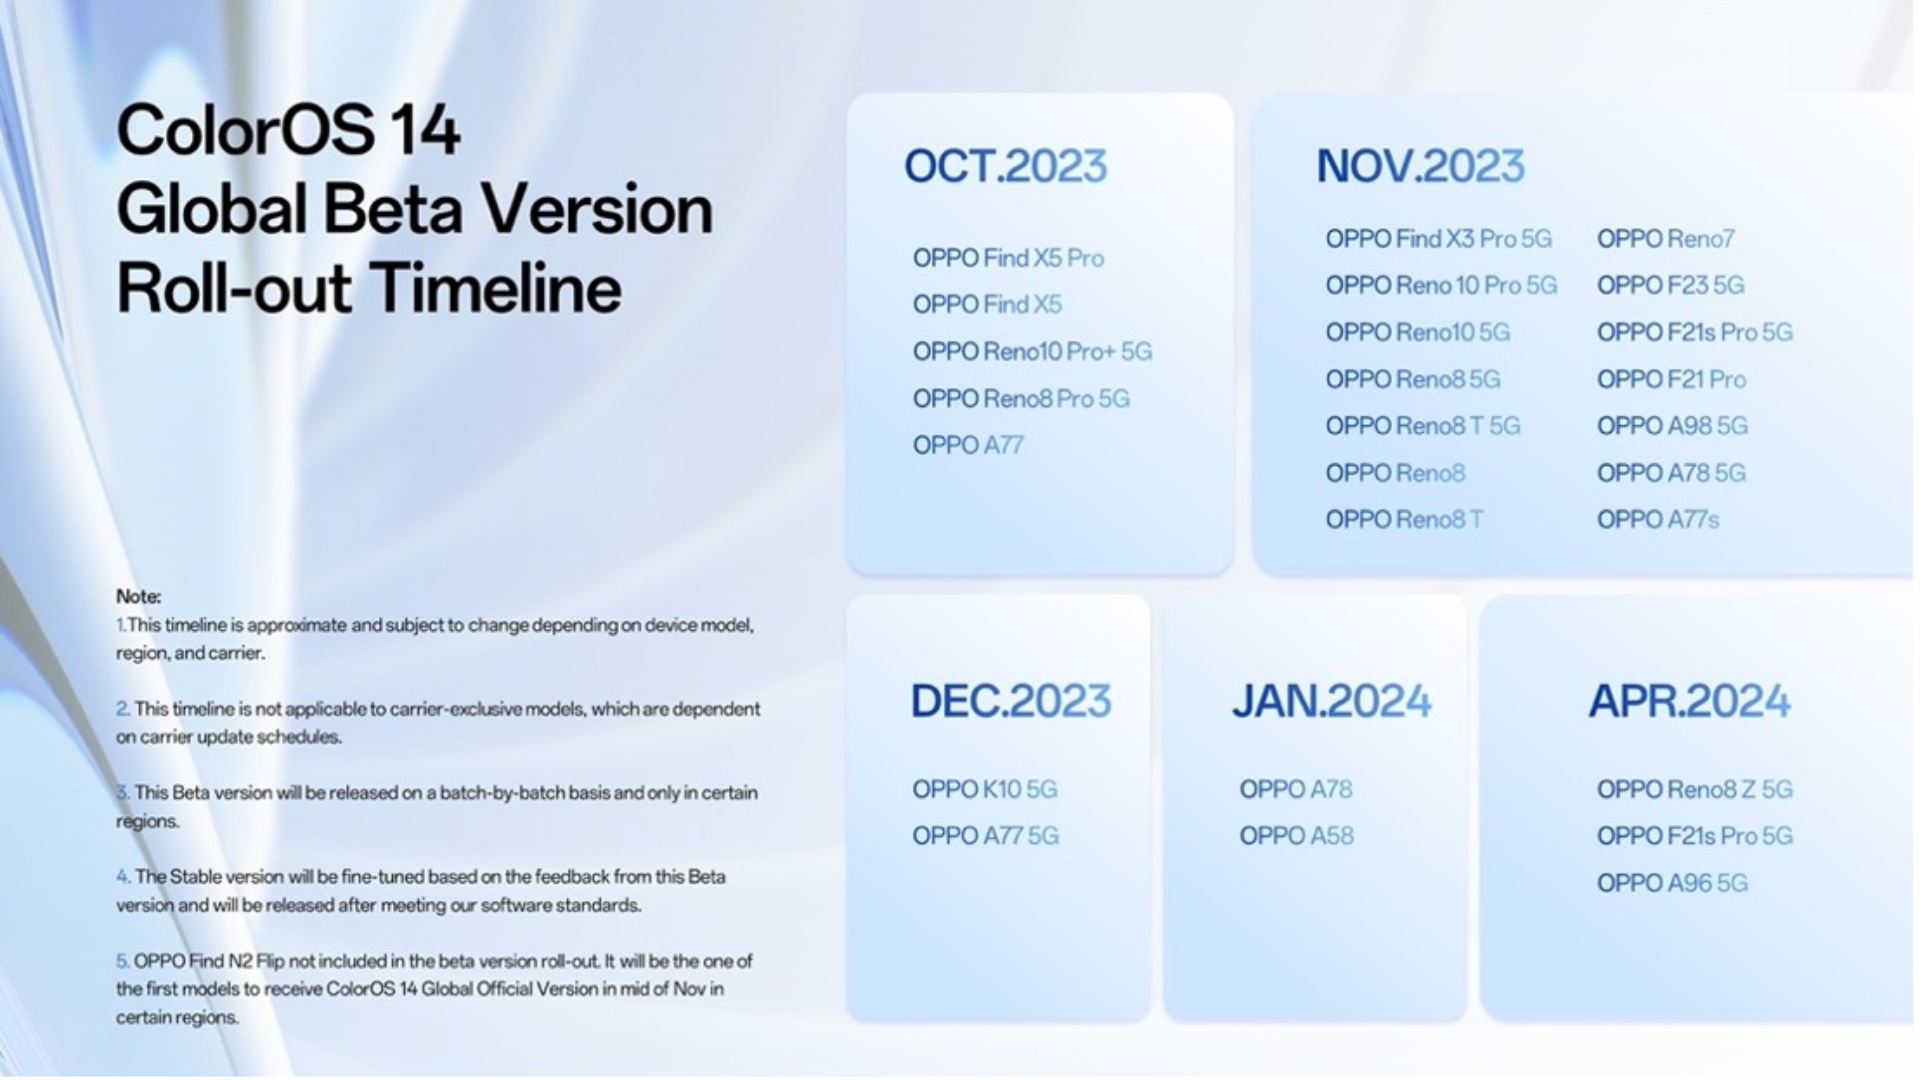 Cronograma de lançamento da versão beta global do Color OS 14